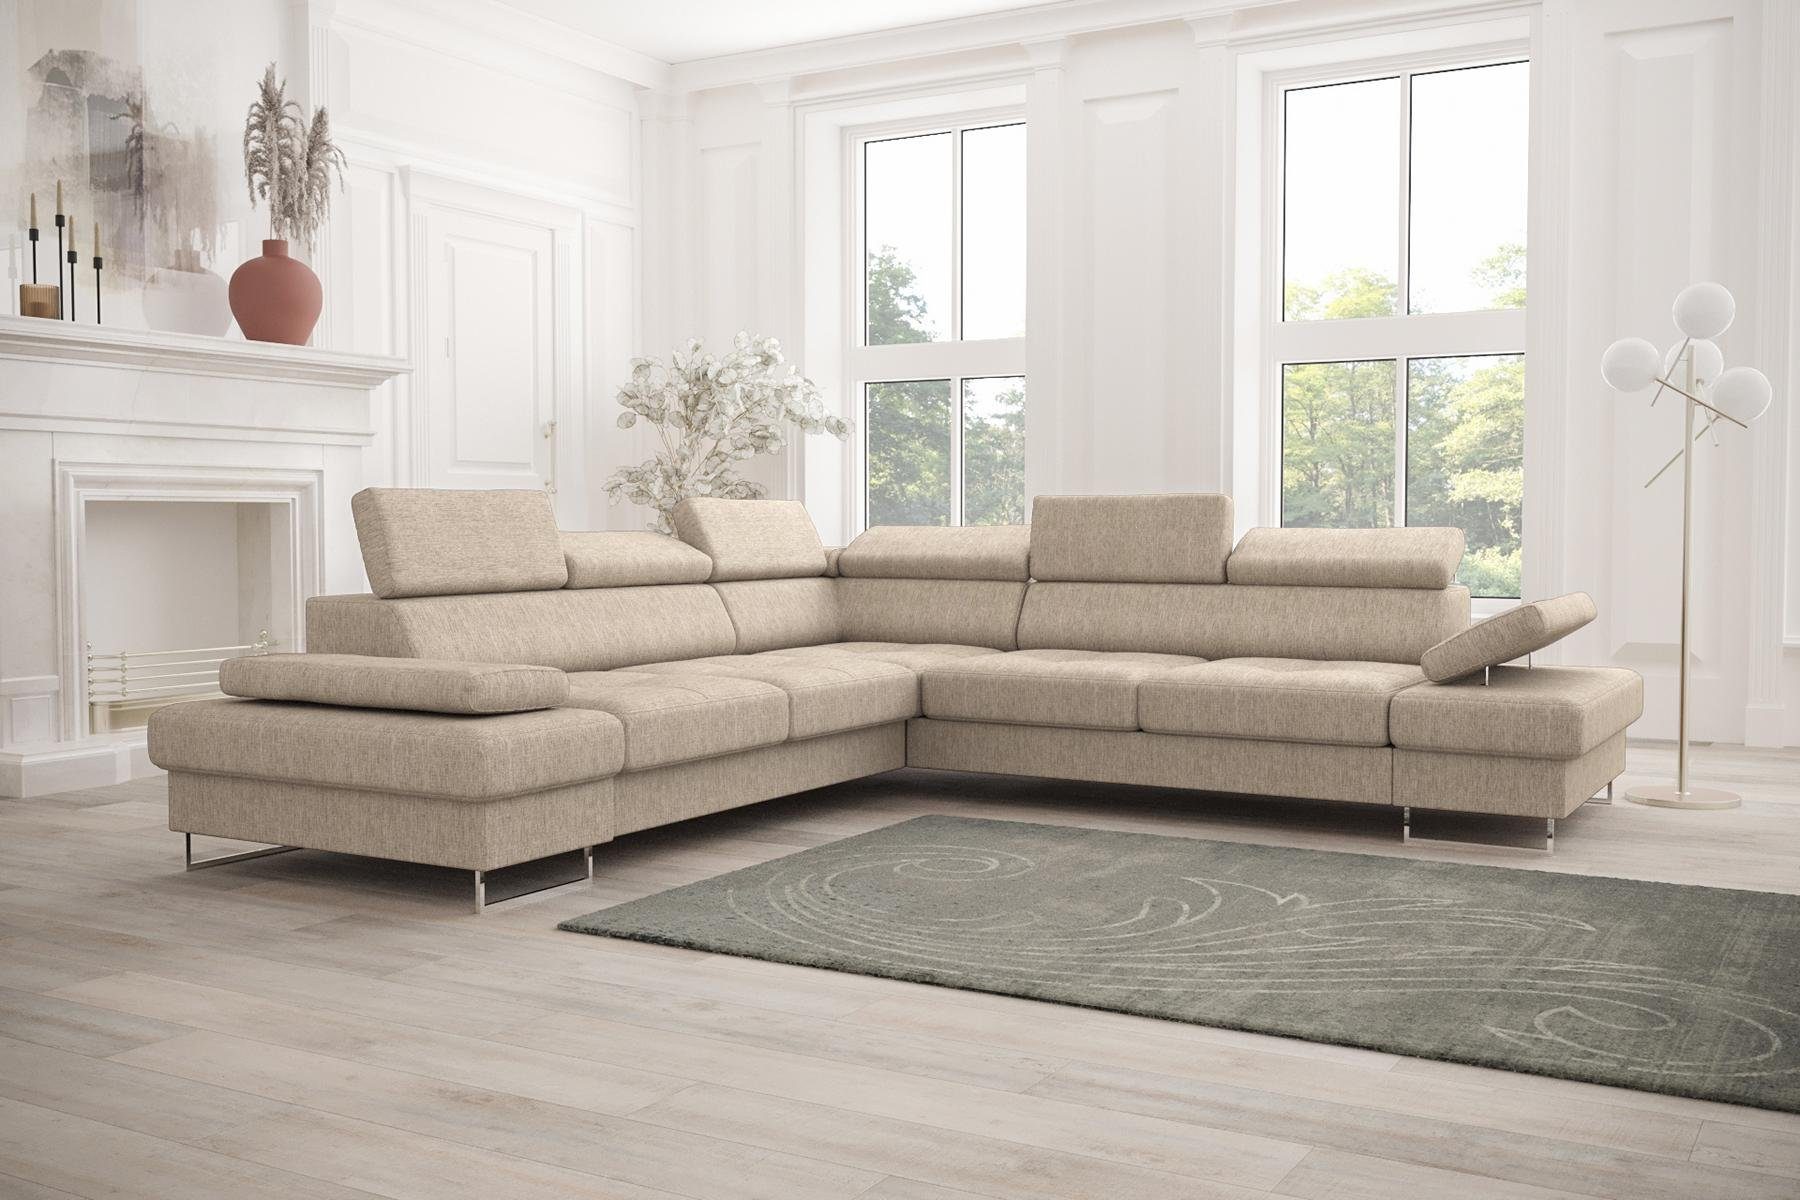 Beige Sofa Ecksofa in JVmoebel Wohnzimmer Polsterung Design, L-Form Couch Europe Made